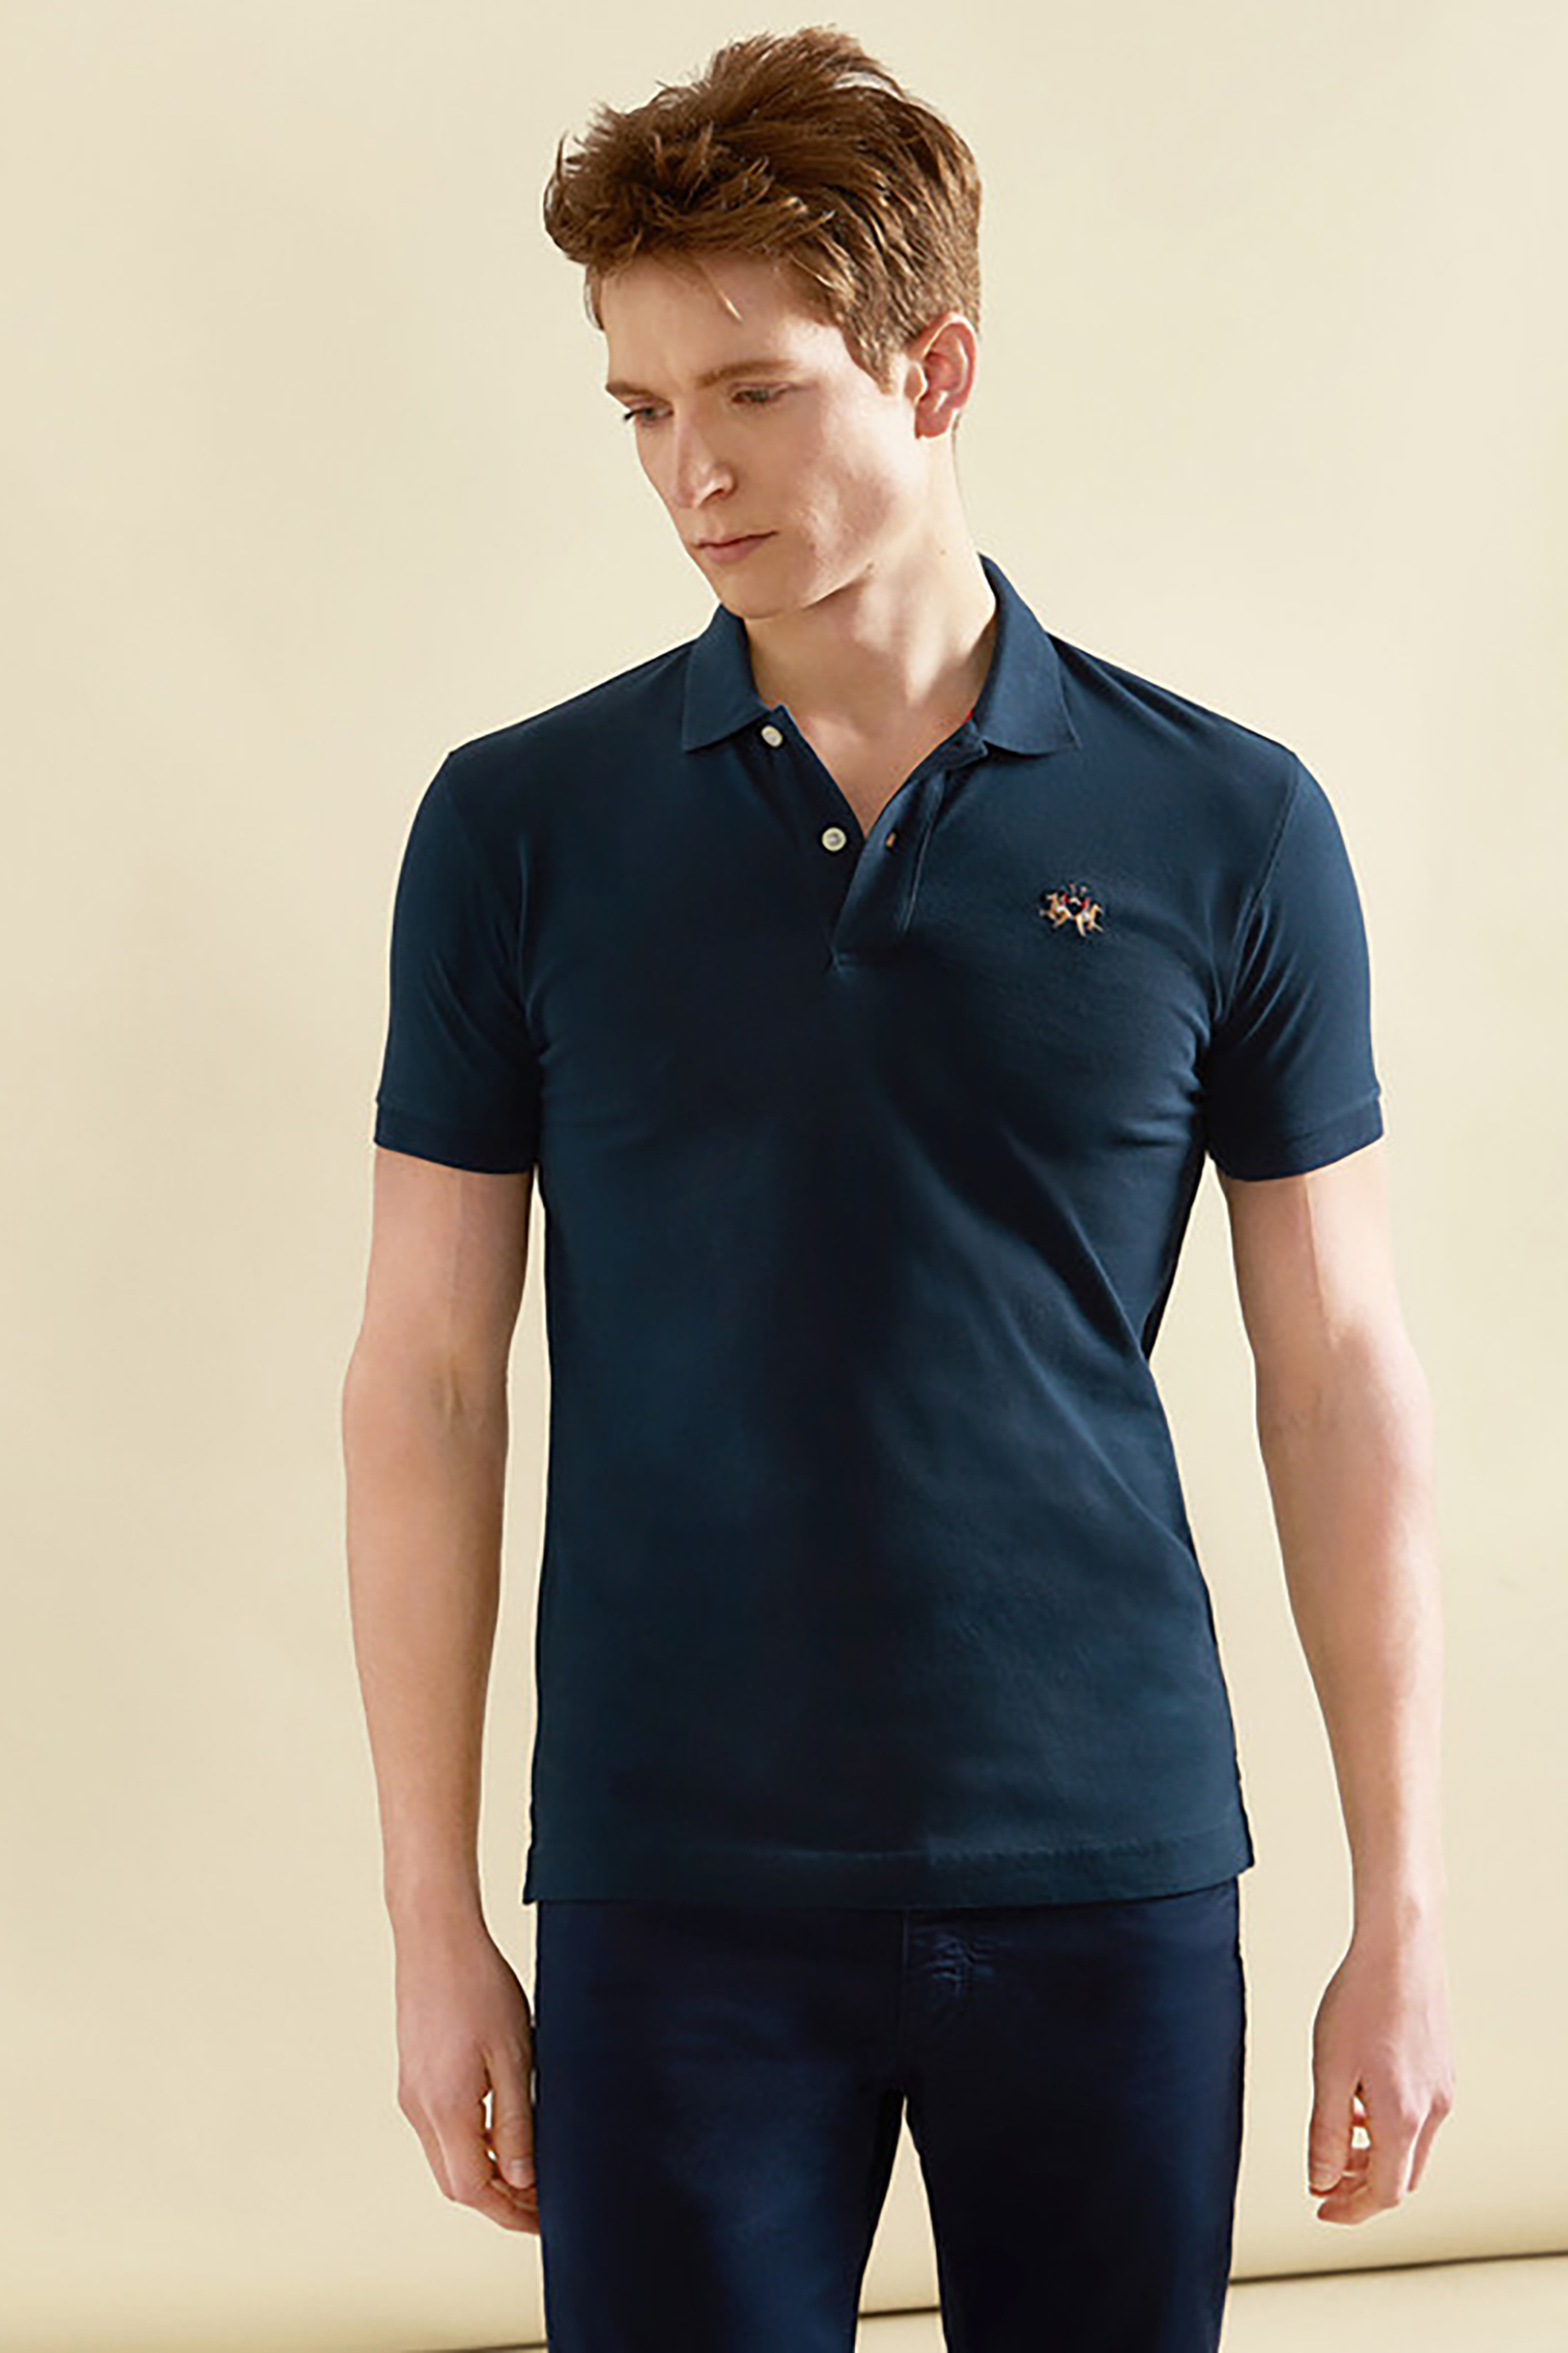 Ανδρική Μόδα > Ανδρικά Ρούχα > Ανδρικές Μπλούζες > Ανδρικές Μπλούζες Πολο La Martina ανδρική πόλο μπλούζα slim fit Eduardo - CCMP02-PK001 Μπλε